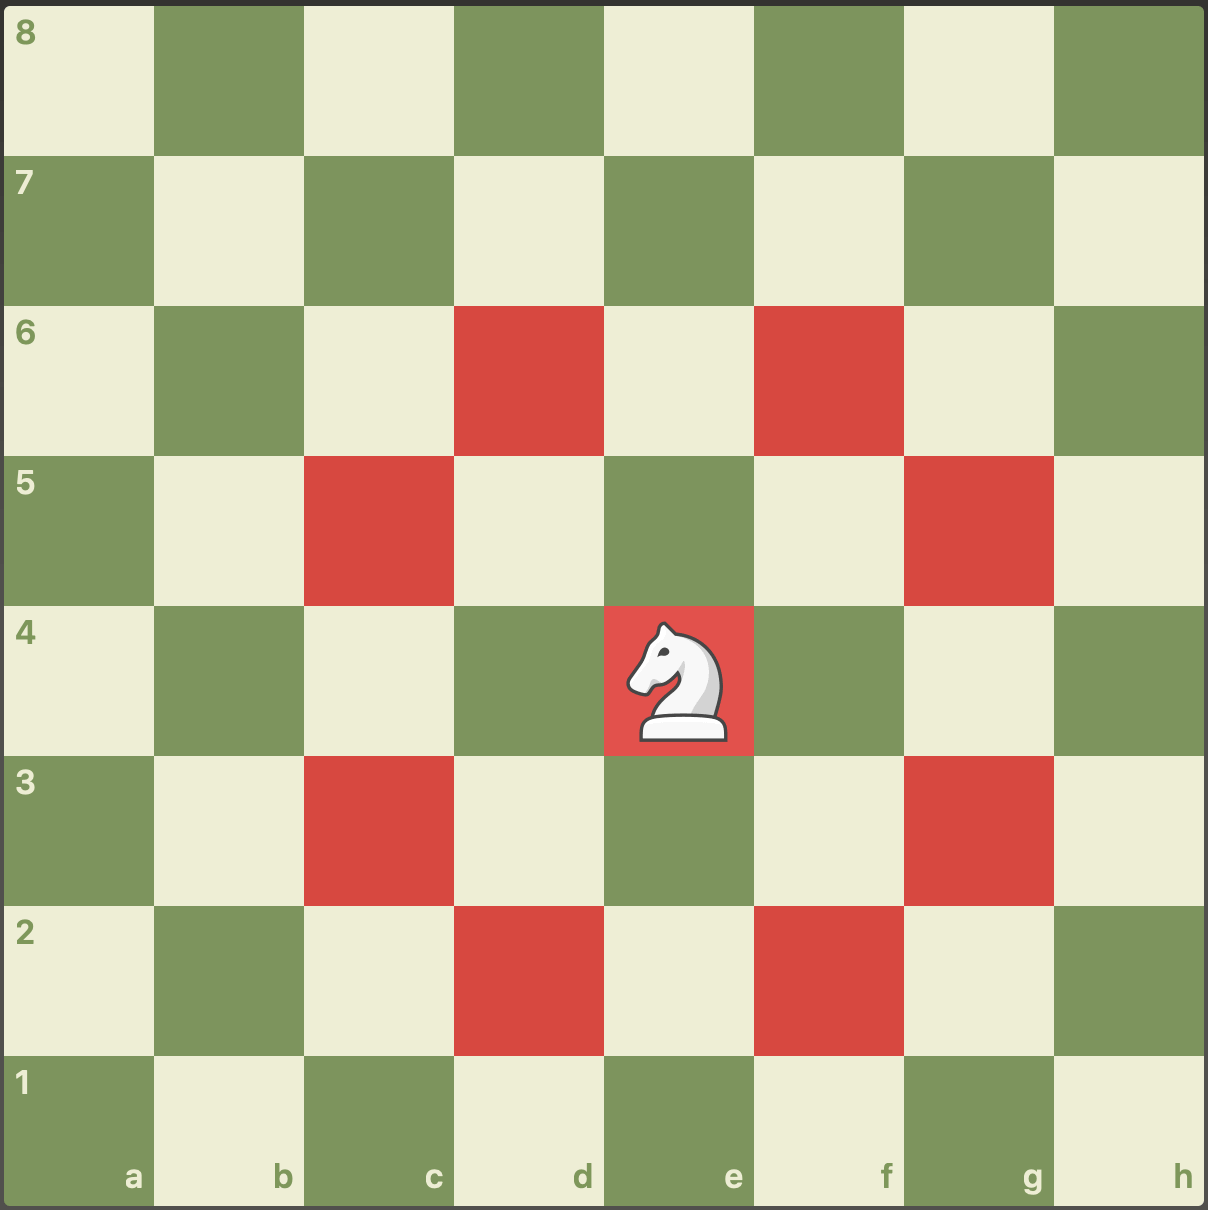 Nomes e valores das peças de xadrez - Termos de Xadrez 